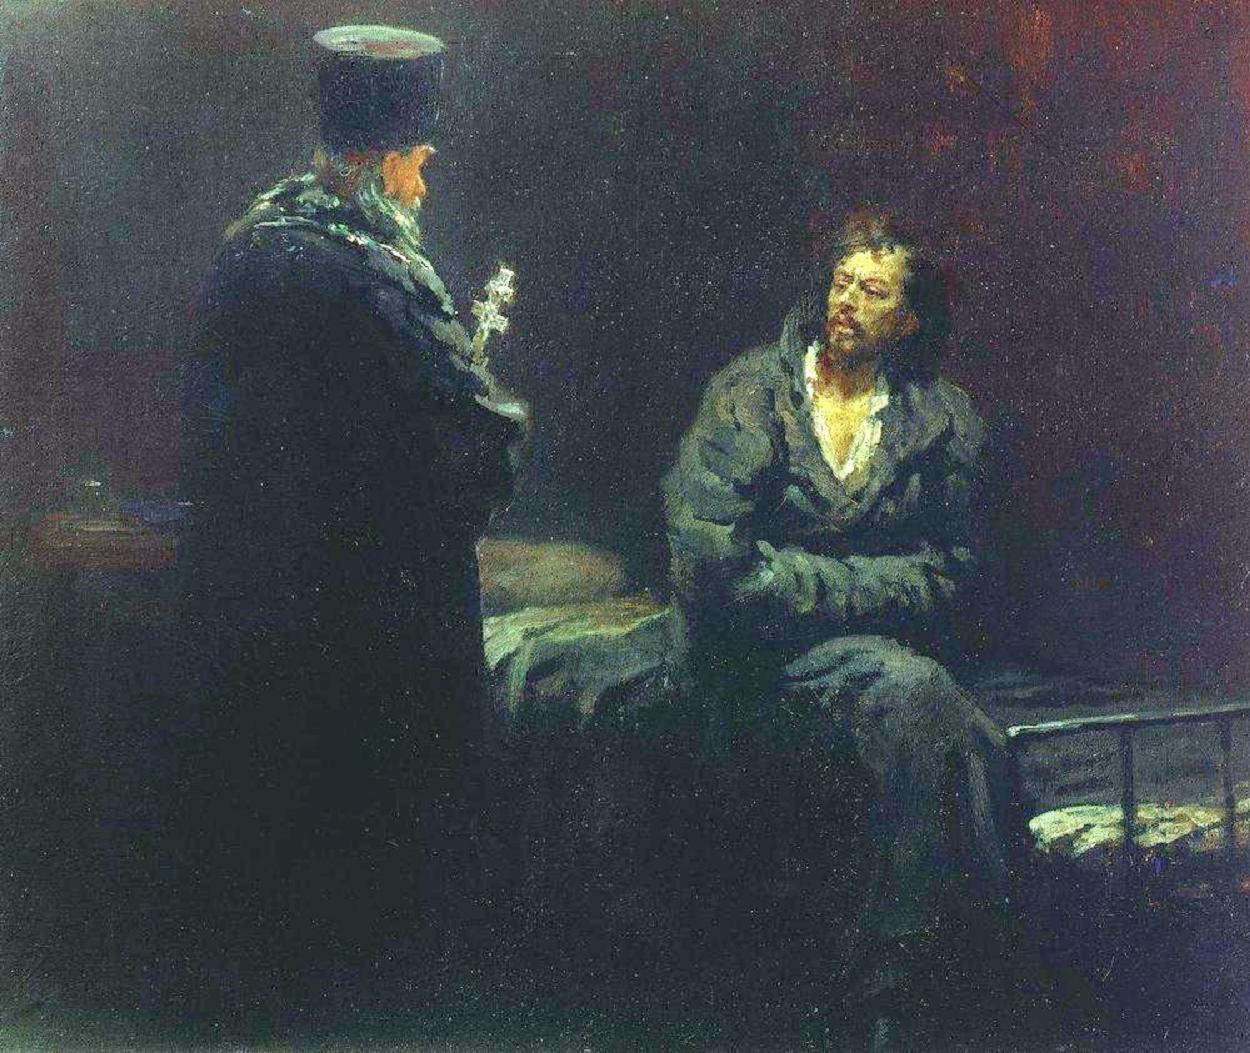 Η Άρνηση της Εξομολόγησης. Πίνακας του Ρώσου ζωγράφου Ilya Efimovich Repin (1844-1930).